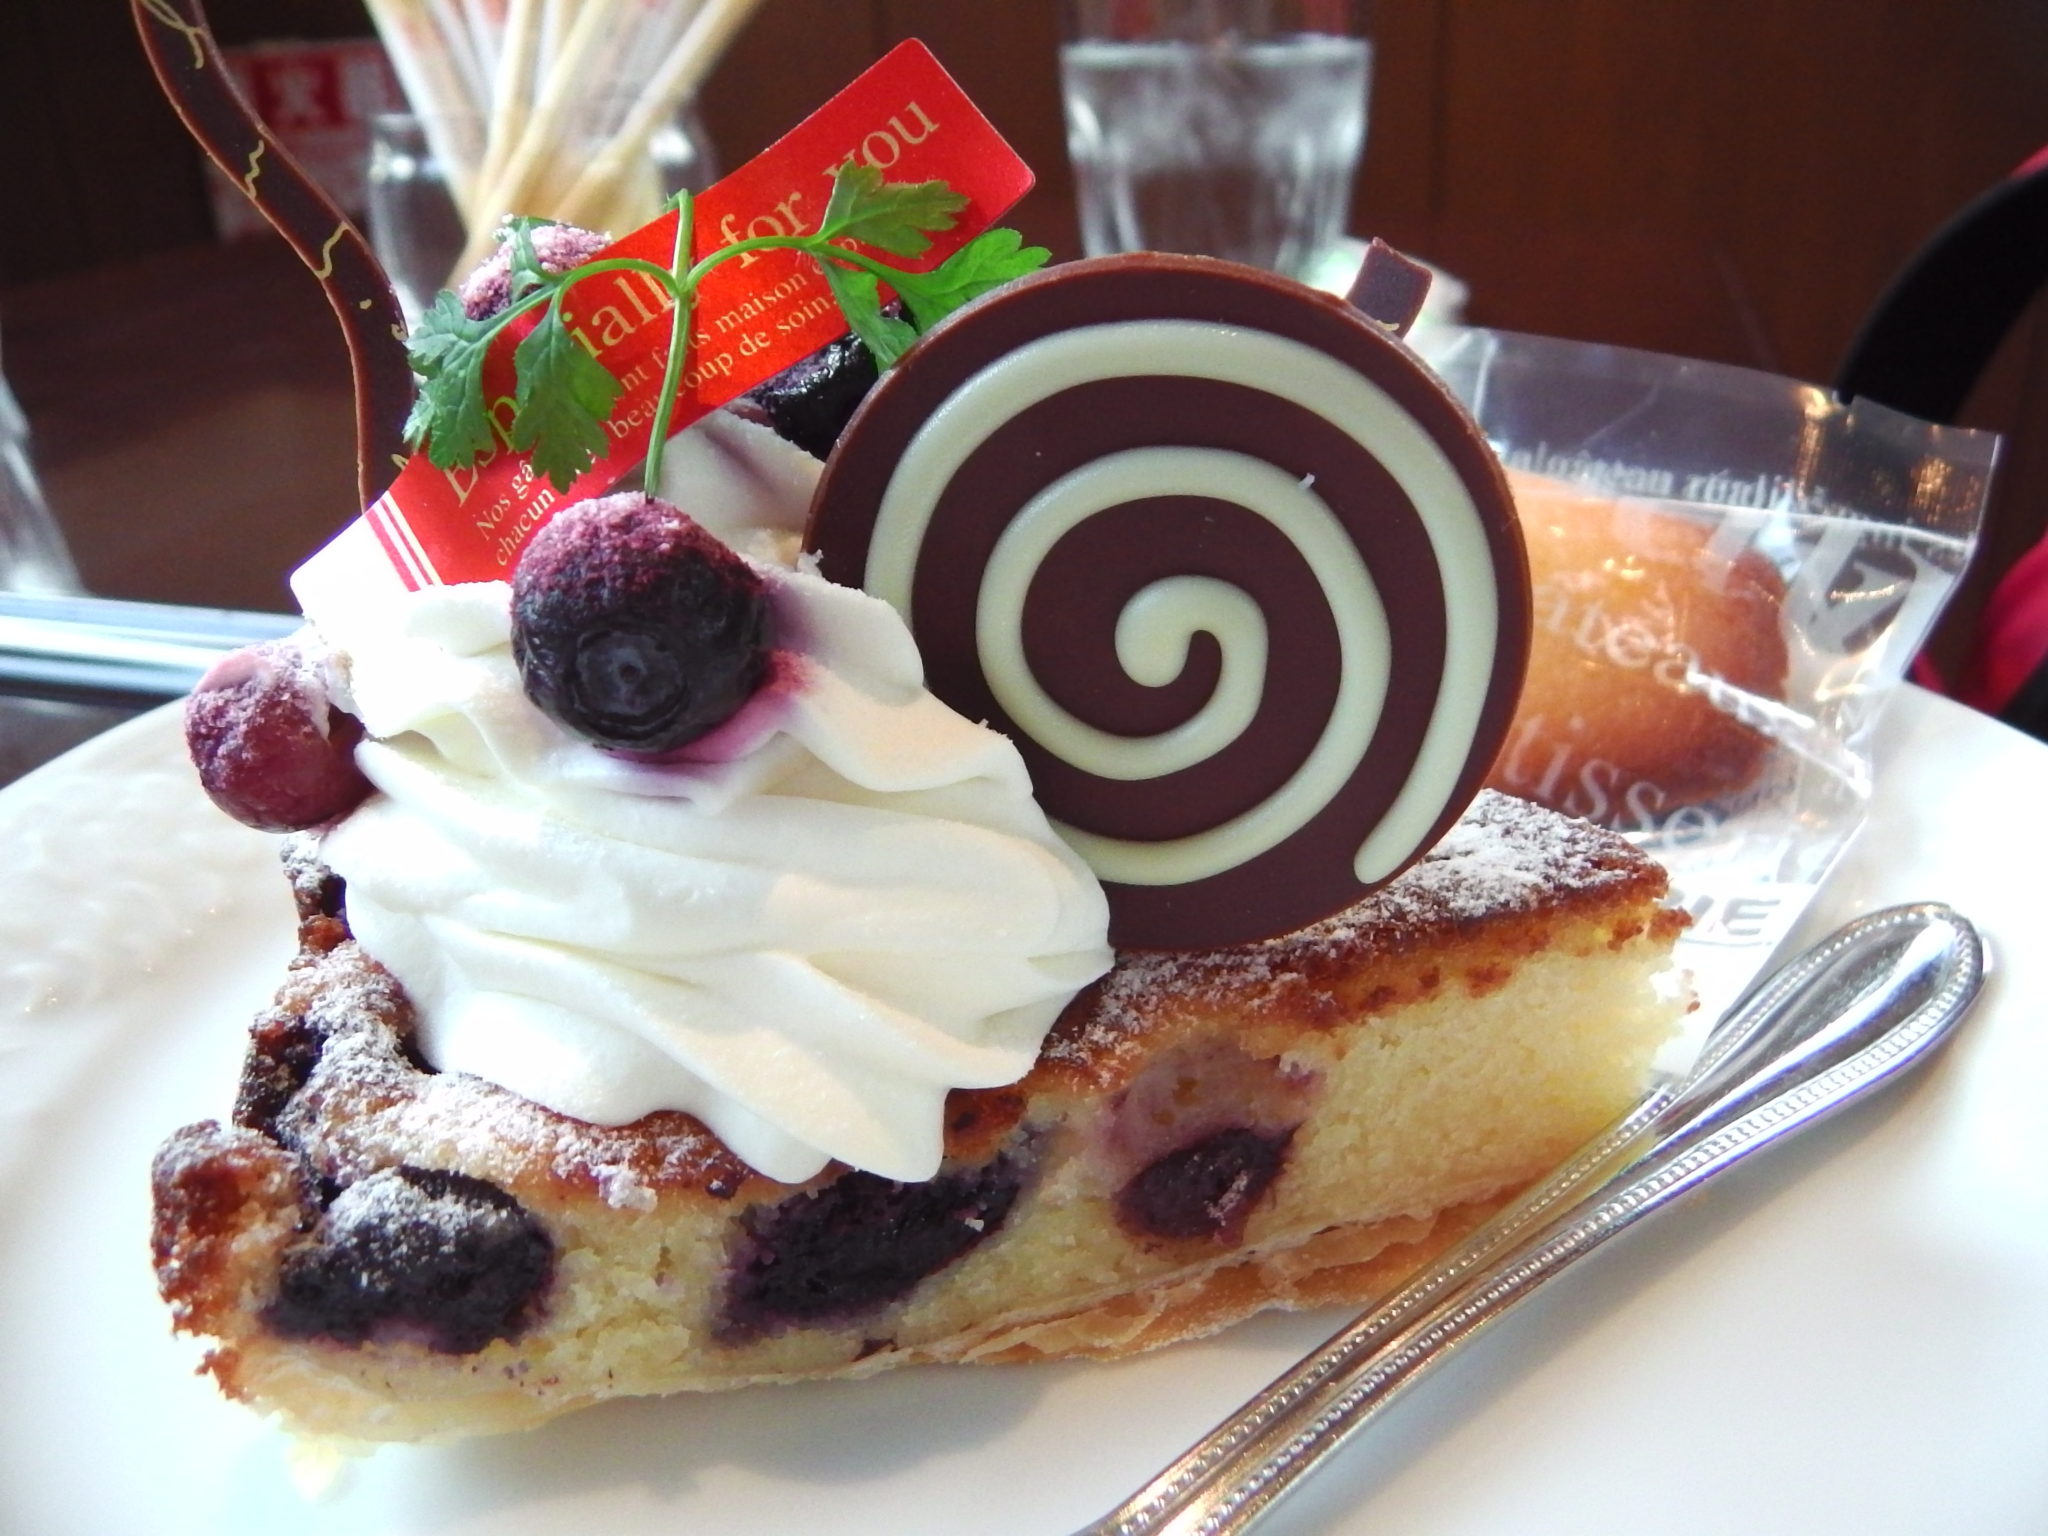 フランス語でサンタクロース 亀山の ペールノエル の ケーキと和菓子 を食べてきた 姫路の種